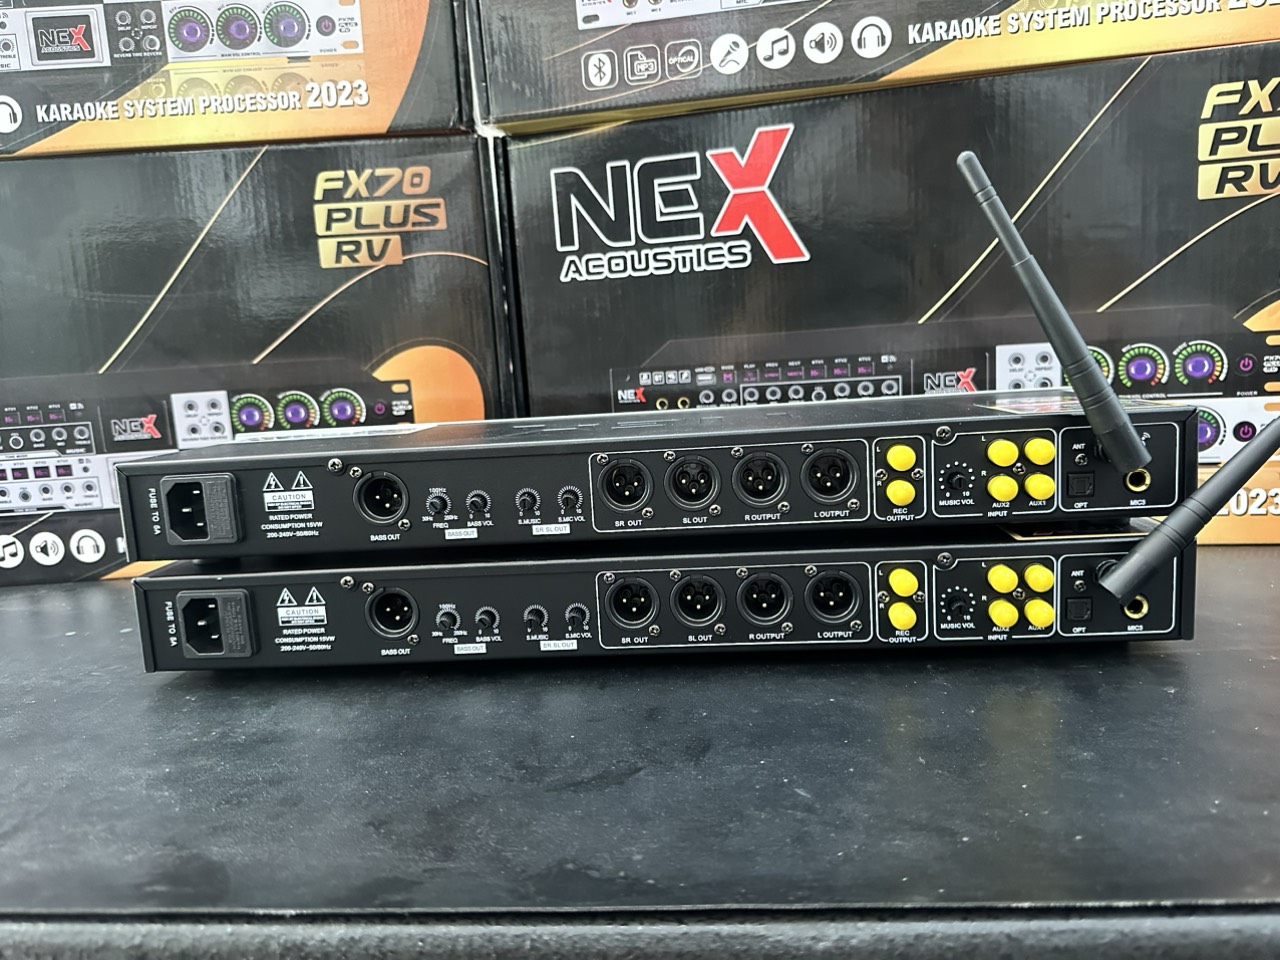 Vang cơ Lai Số Nex FX70 Plus - Vang cơ thế hệ mới tích hợp 3 chế độ KTV karaoke chuyên nghiệp - Hàng Nhập Khẩu